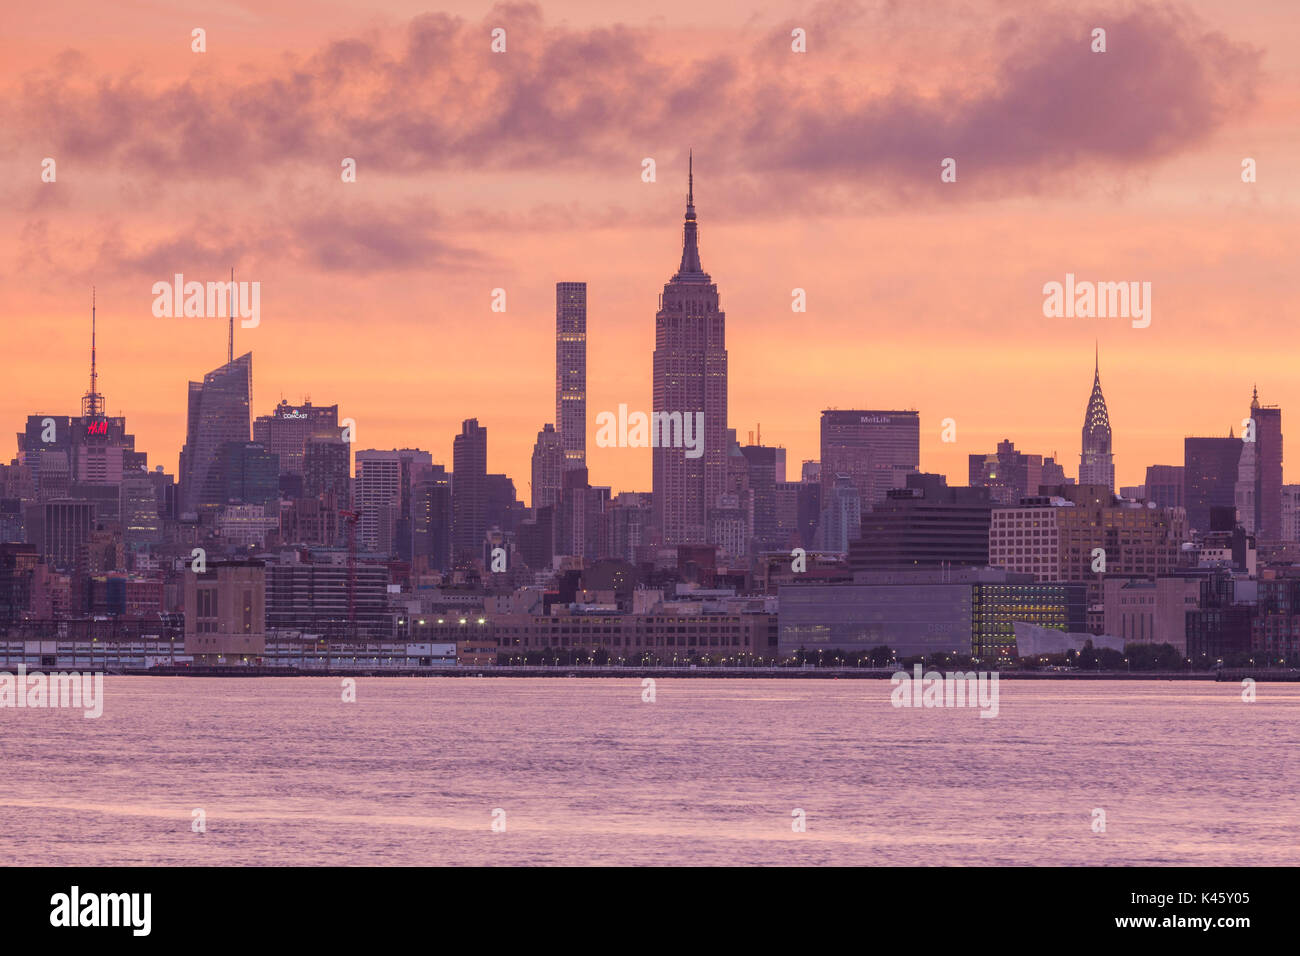 Stati Uniti d'America, New York New York City, skyline di Manhattan con l' Empire State Building dal New Jersey, alba Foto Stock